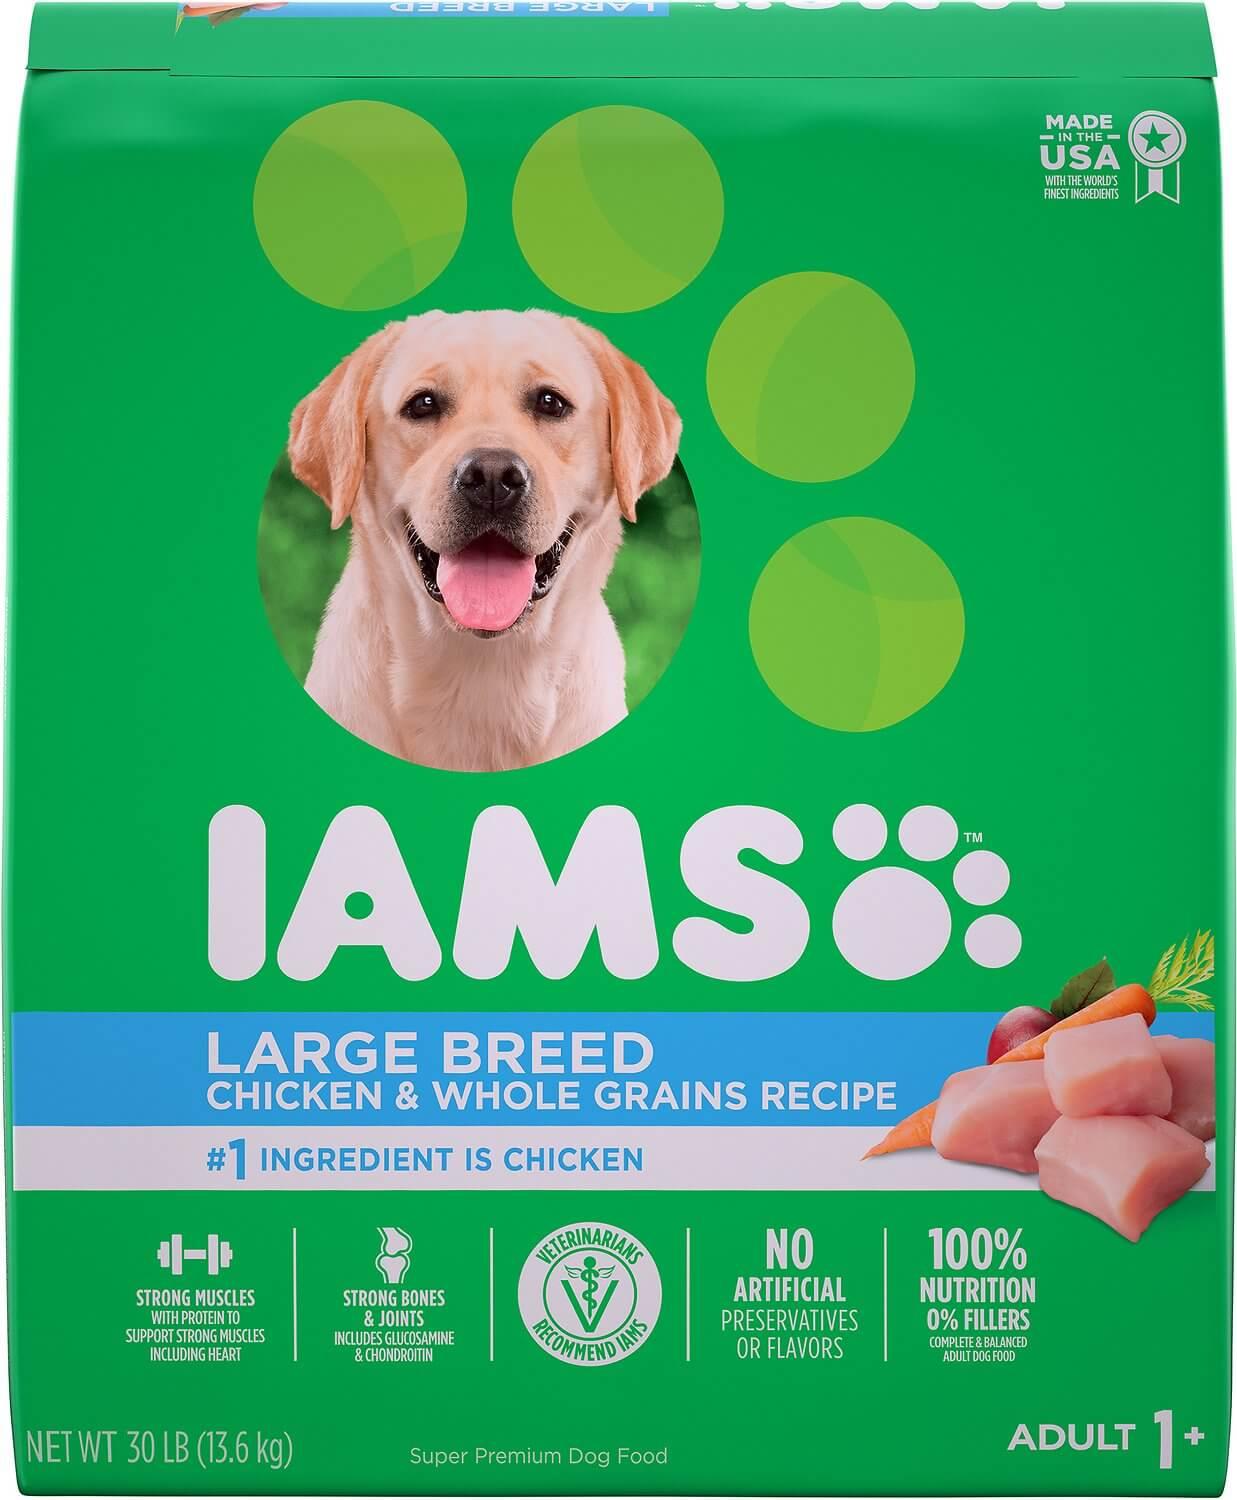 iams dog food for german shepherds